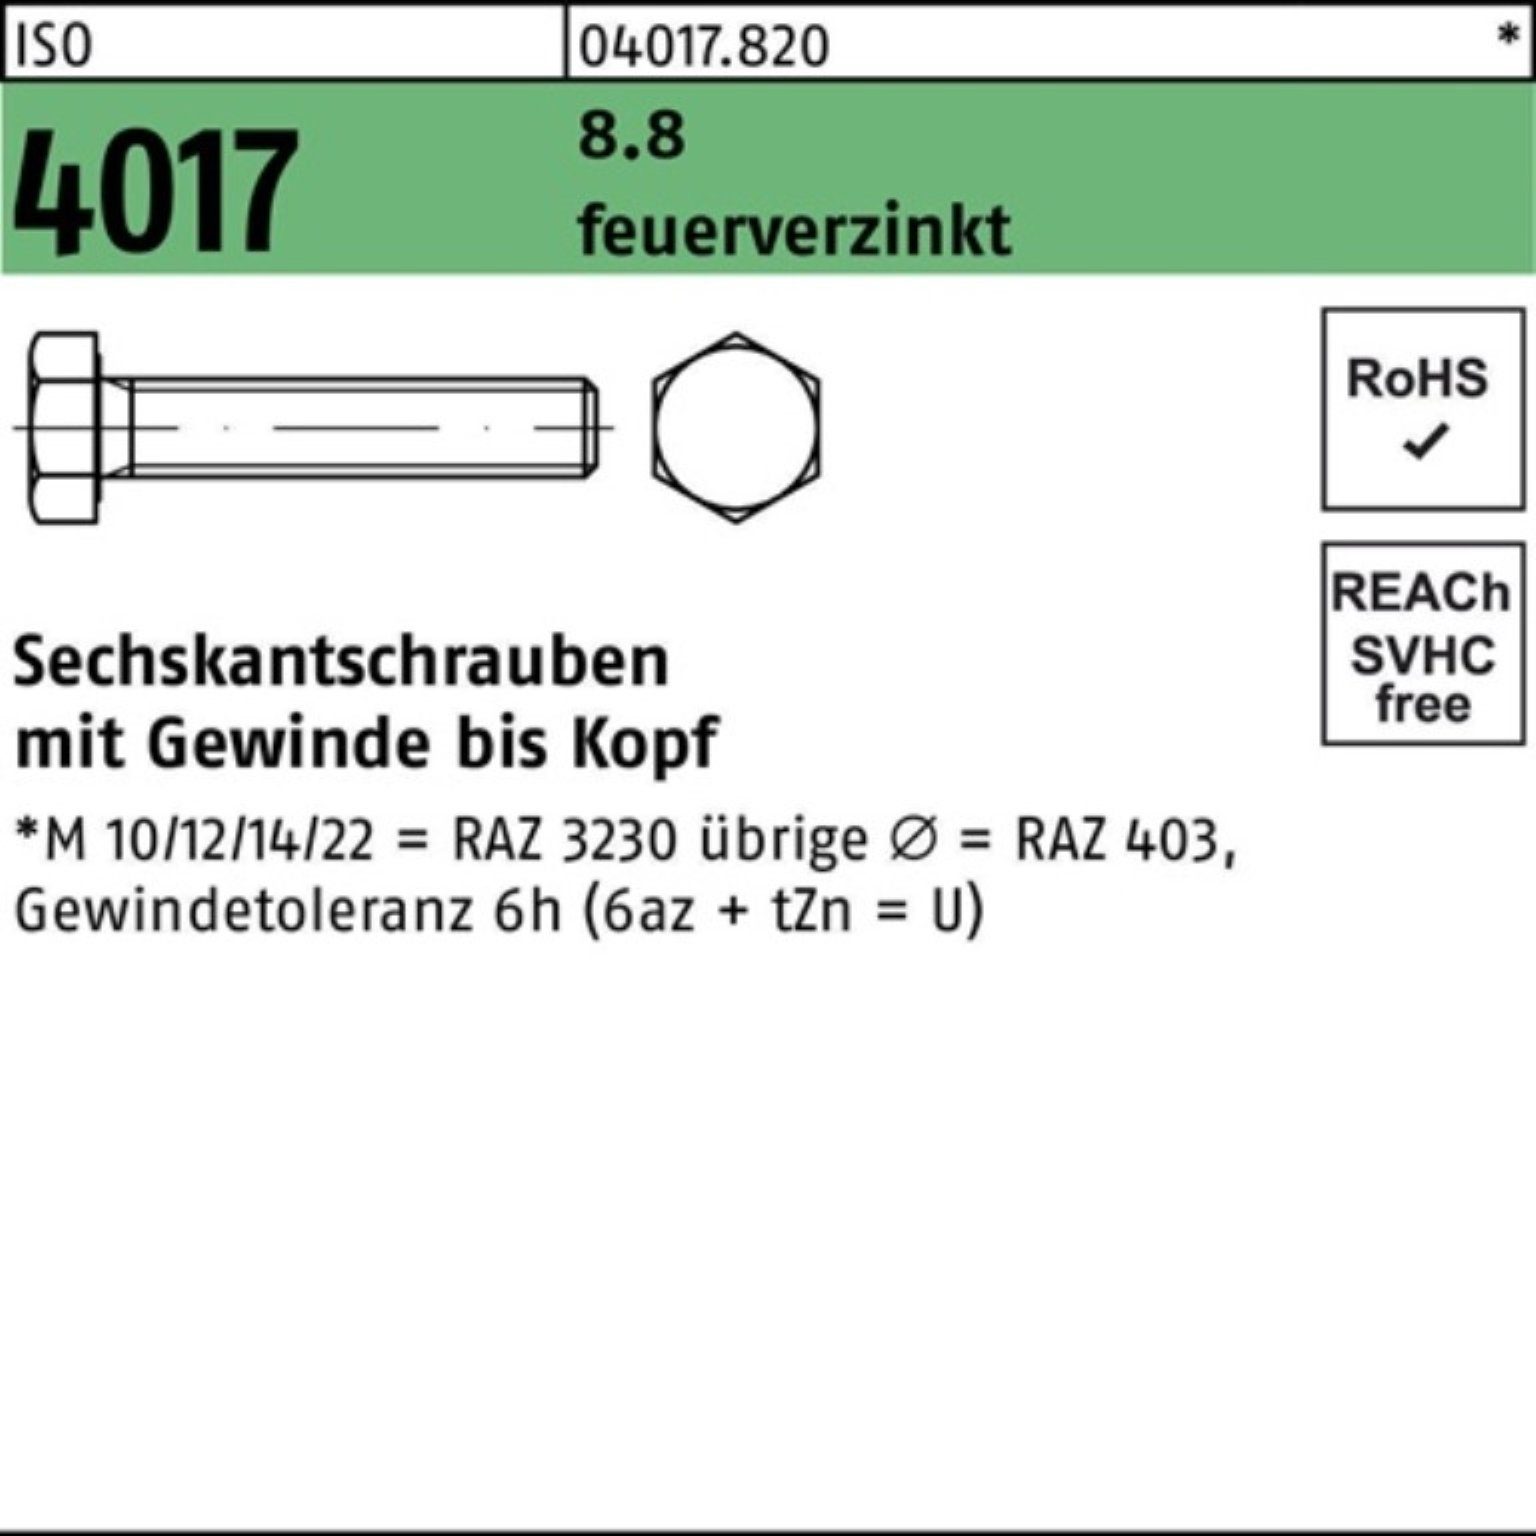 Bufab Sechskantschraube 100er Pack Sechskantschraube ISO 4017 VG M12x 45 8.8 feuerverz. 100 St